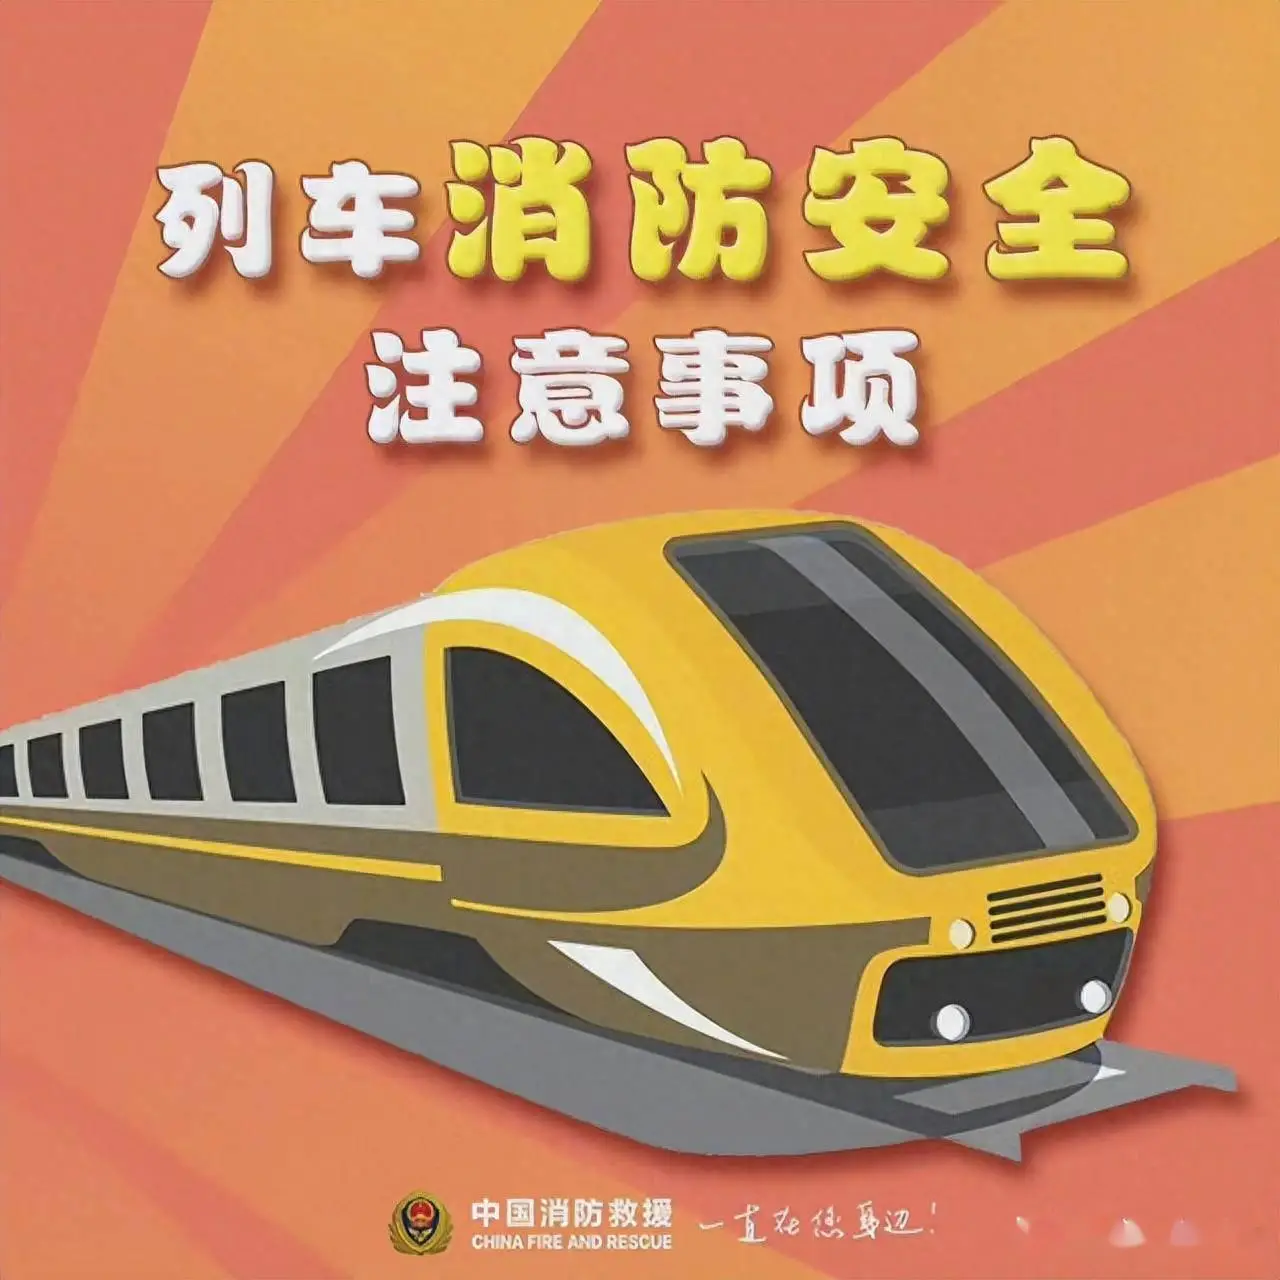 速度与激情！中国高铁模拟器游戏手机版带你体验真实高铁驾驶乐趣